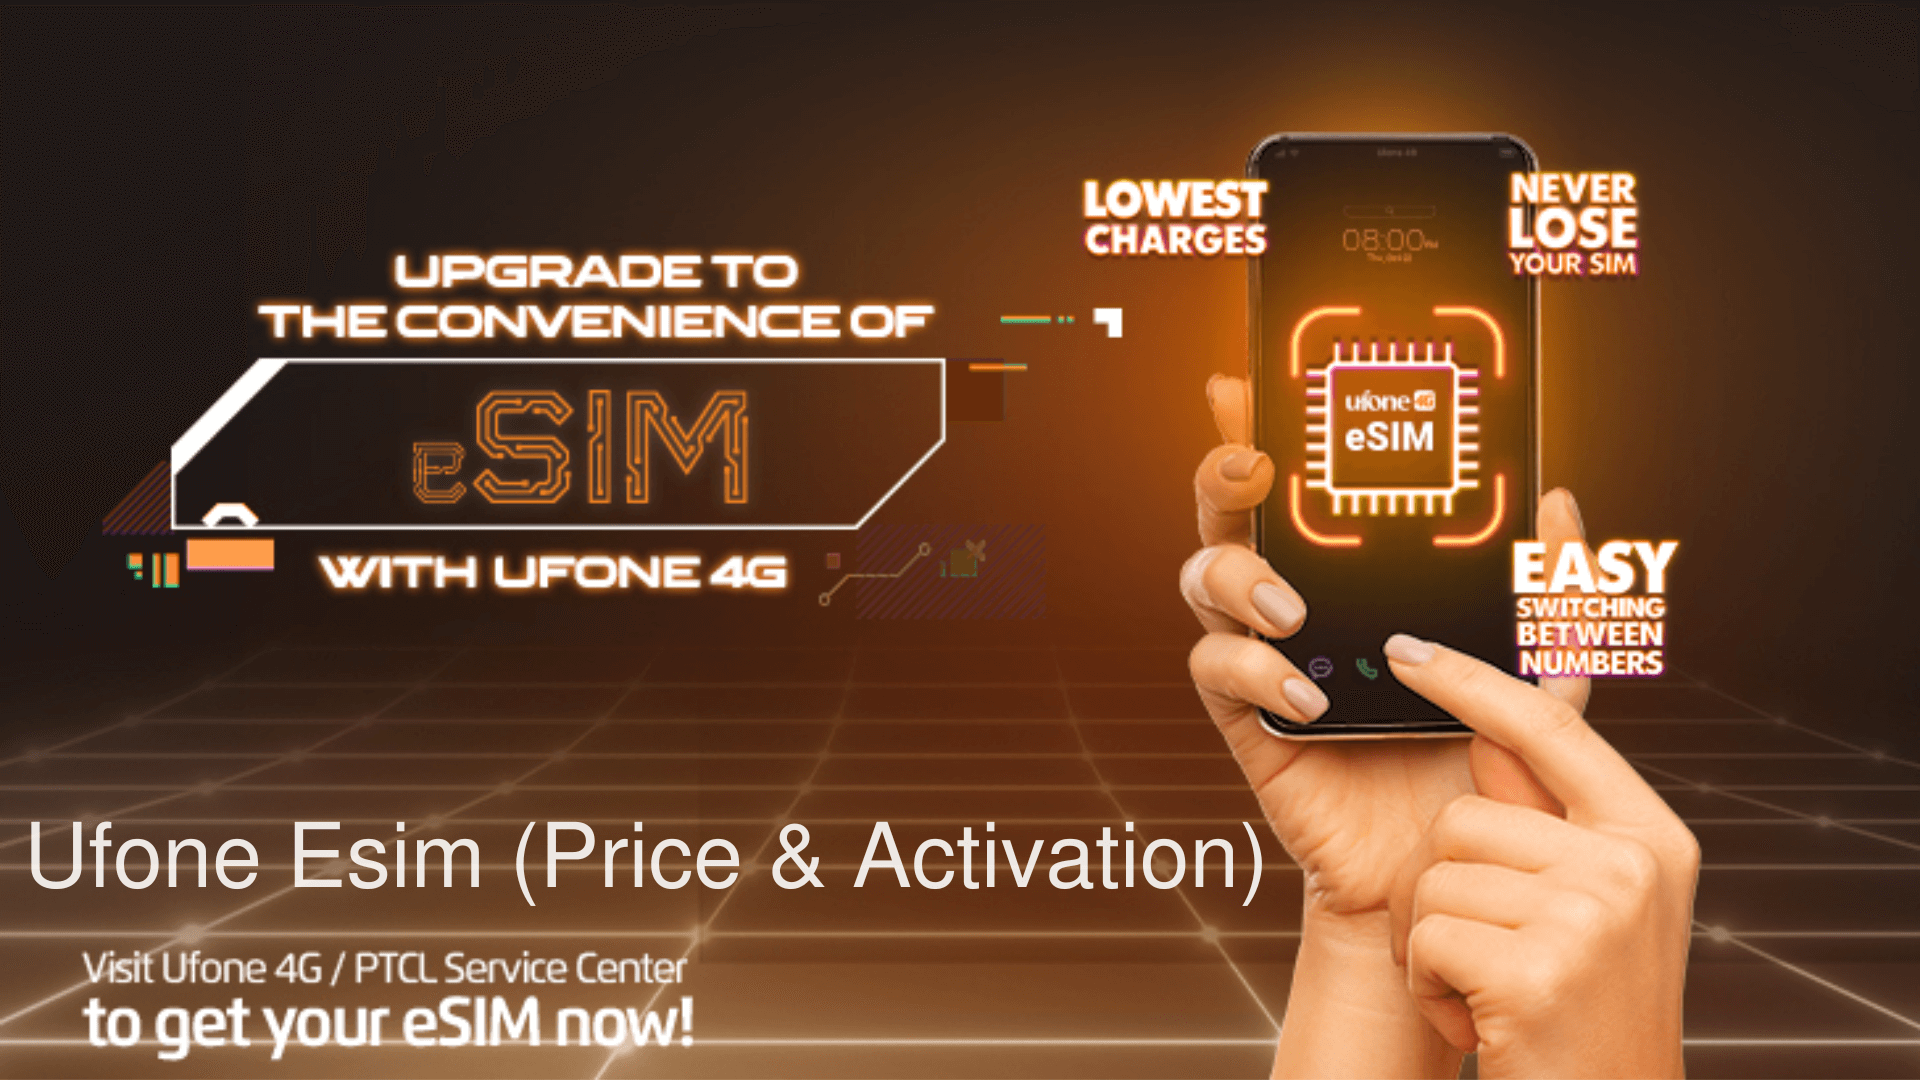 Ufone Esim (Price & Activation)